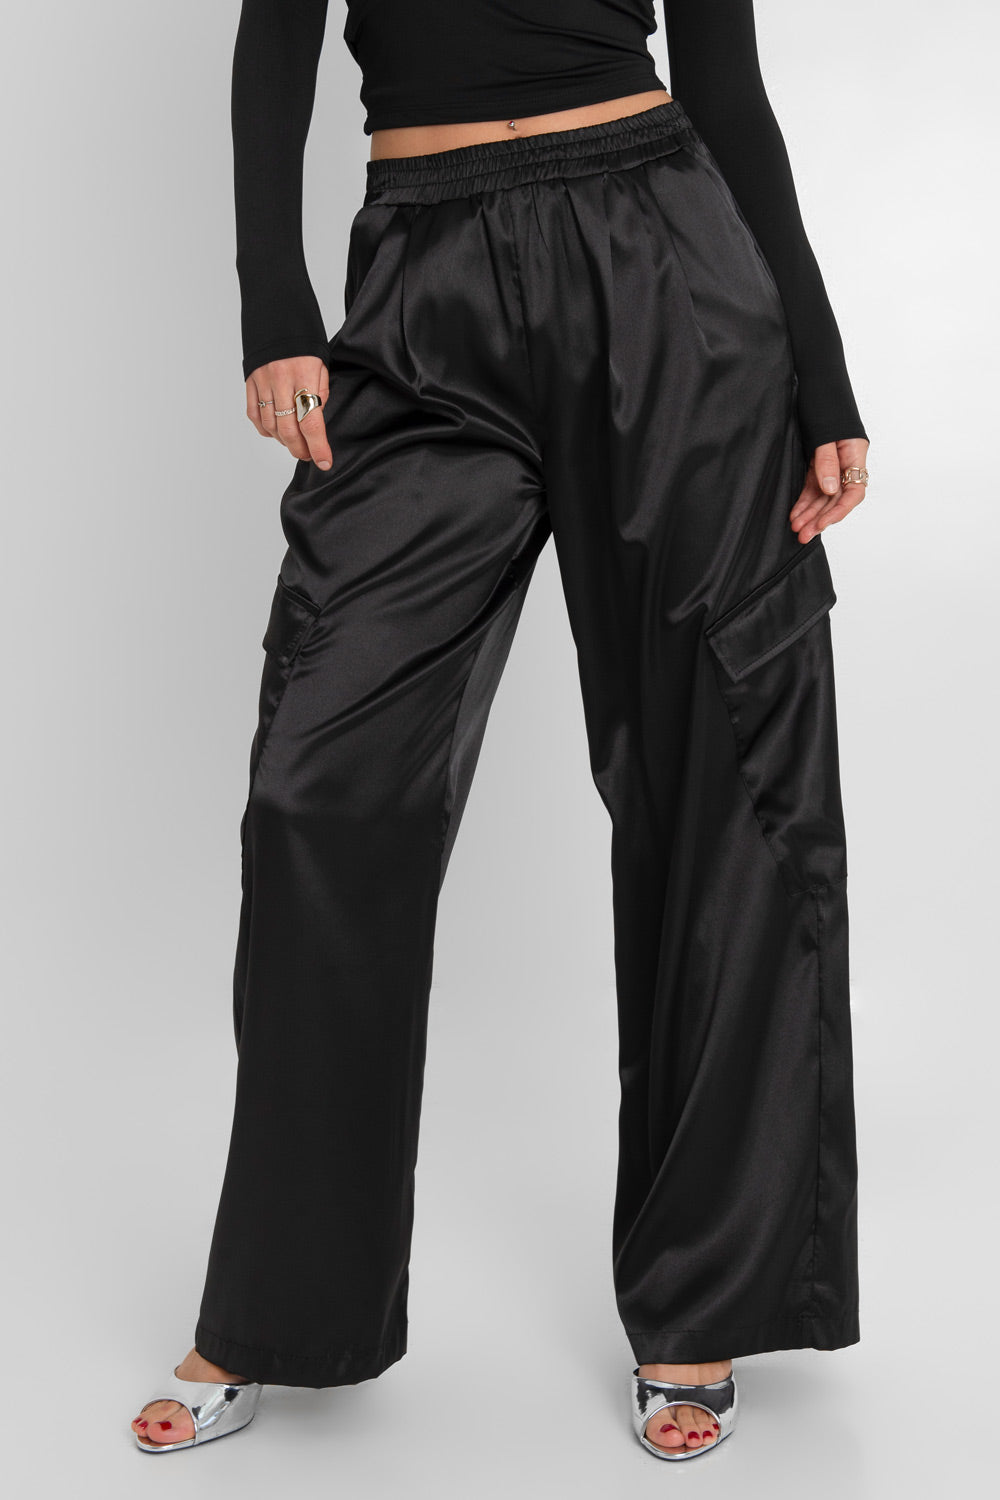 Pantalón cargo wide leg satinado de cintura alta con pretina elástica, plisados decorativos frontales, bolsillos delanteros y laterales cargo con cartera.